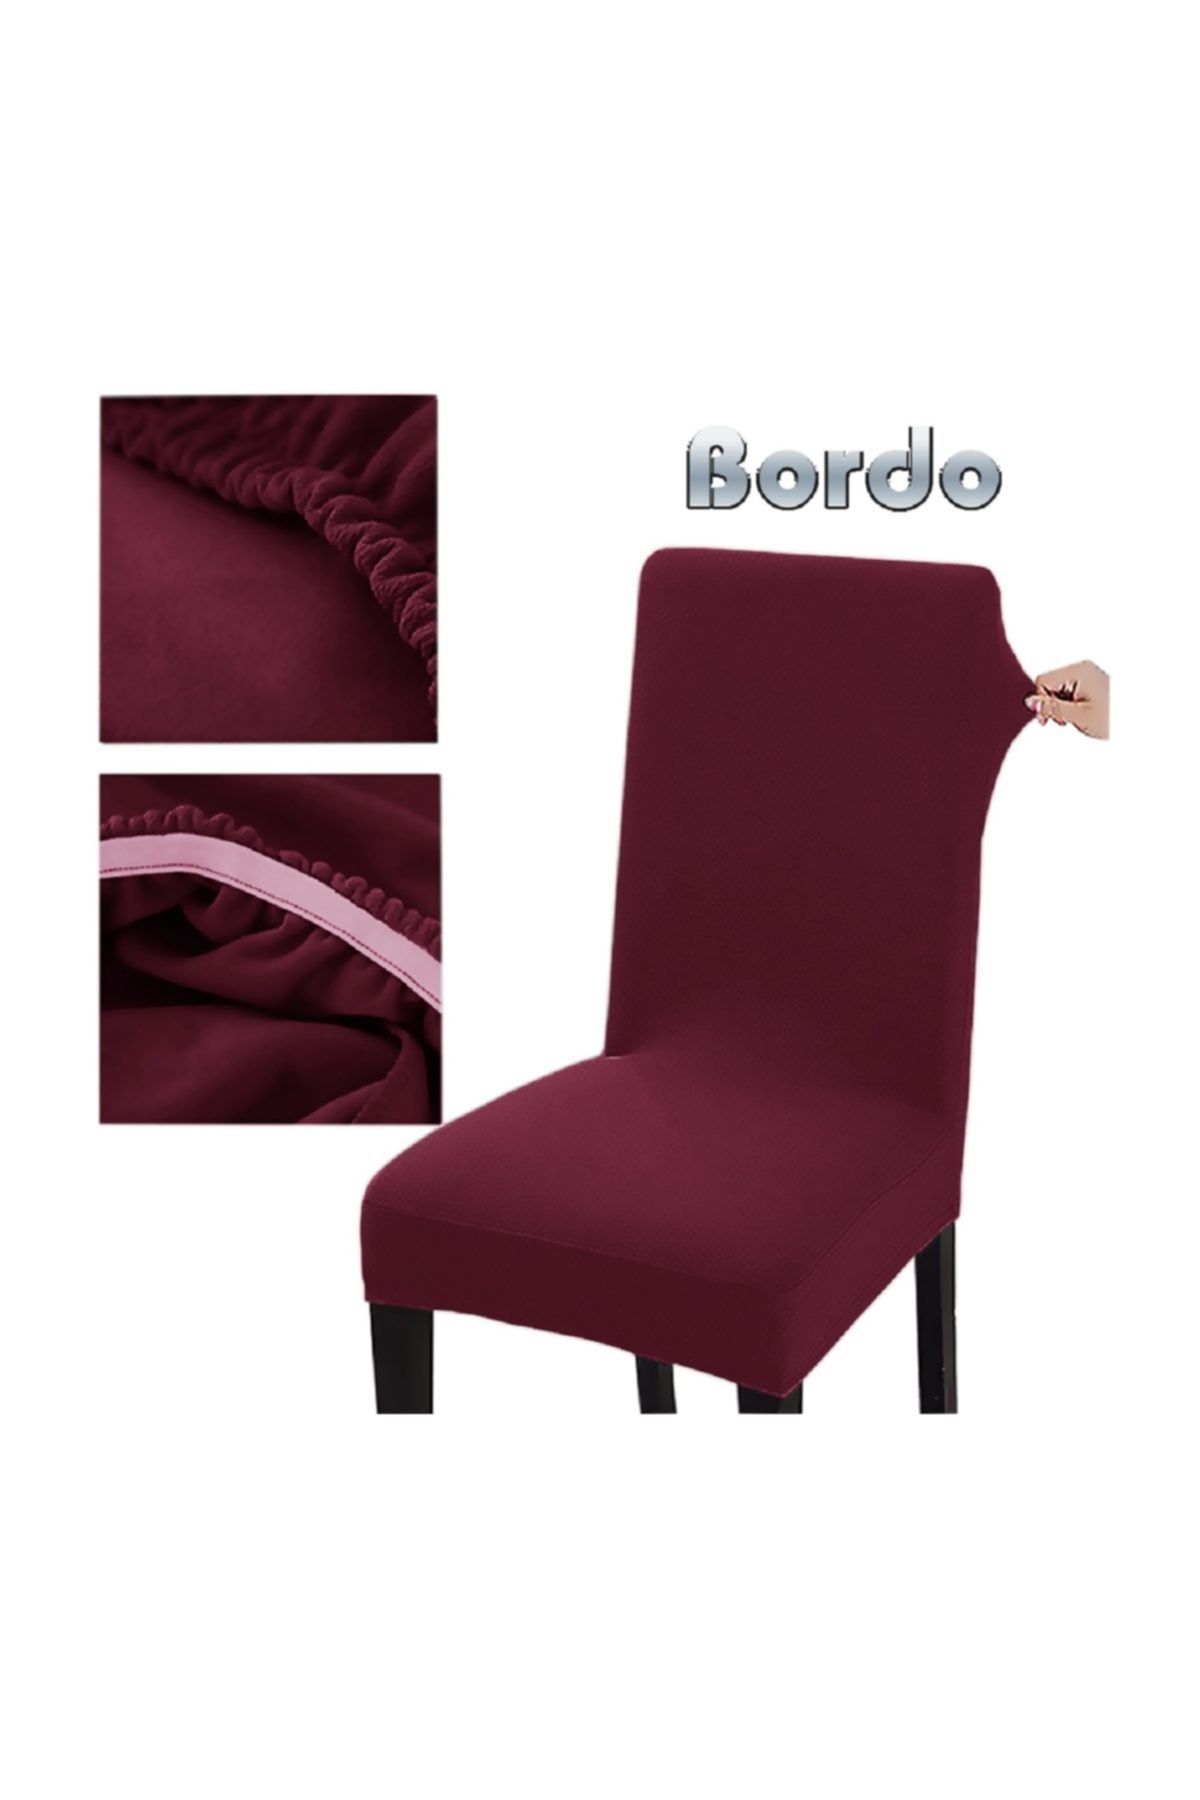 abeltrade Sandalye Kılıfı. Bordo Rengi. Standart Model 6-lı